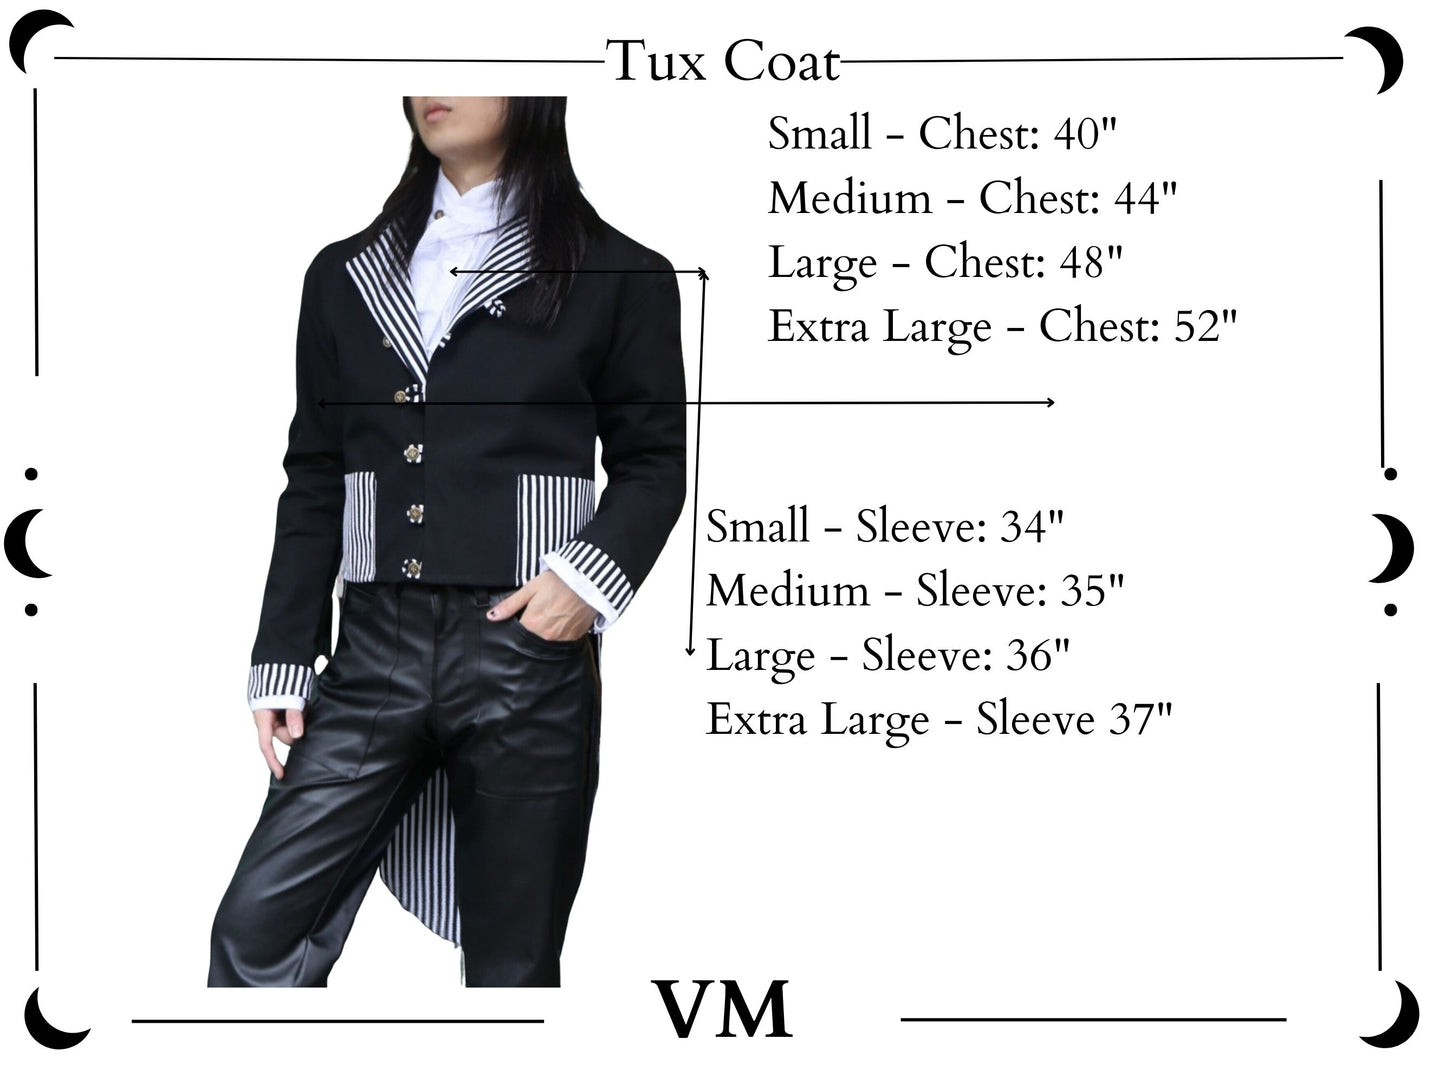 The VM Tux Coat